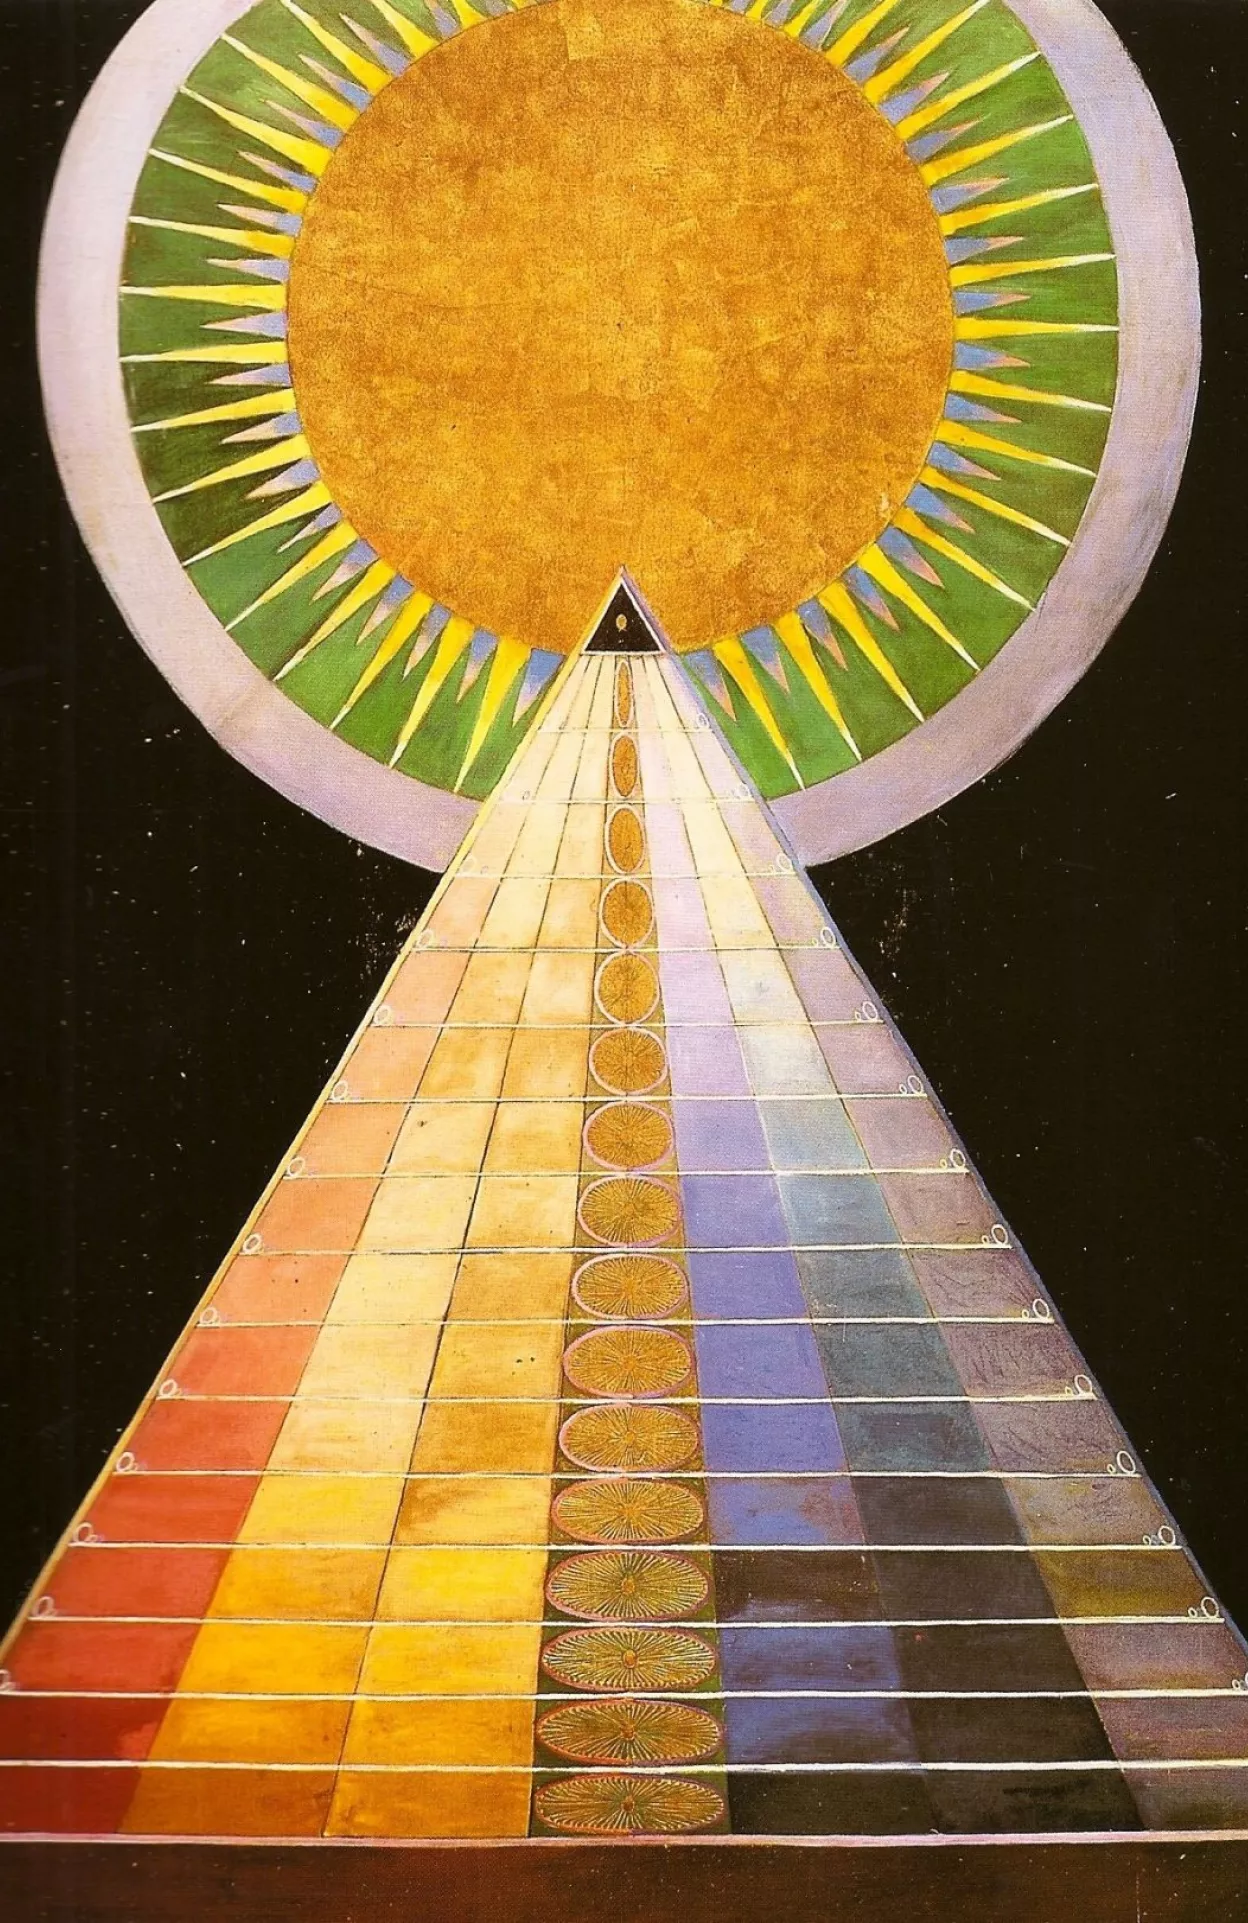 Hilma af Klimt pyramid